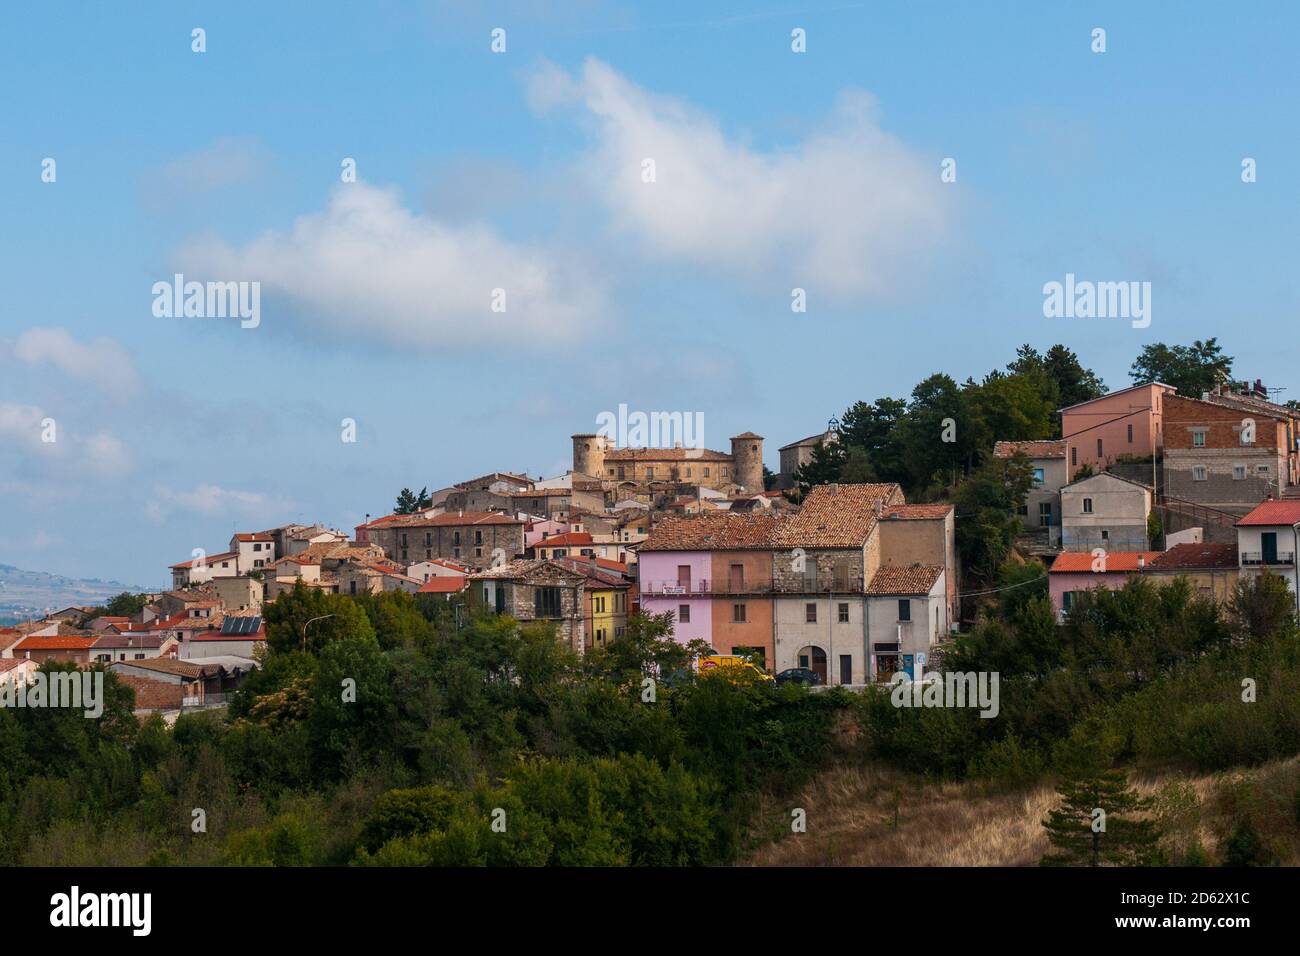 Ein typischer Blick auf das italienische Dorf Torrella del Sannio in Molise, mit seinen Häusern und etwas Vegetation Stockfoto